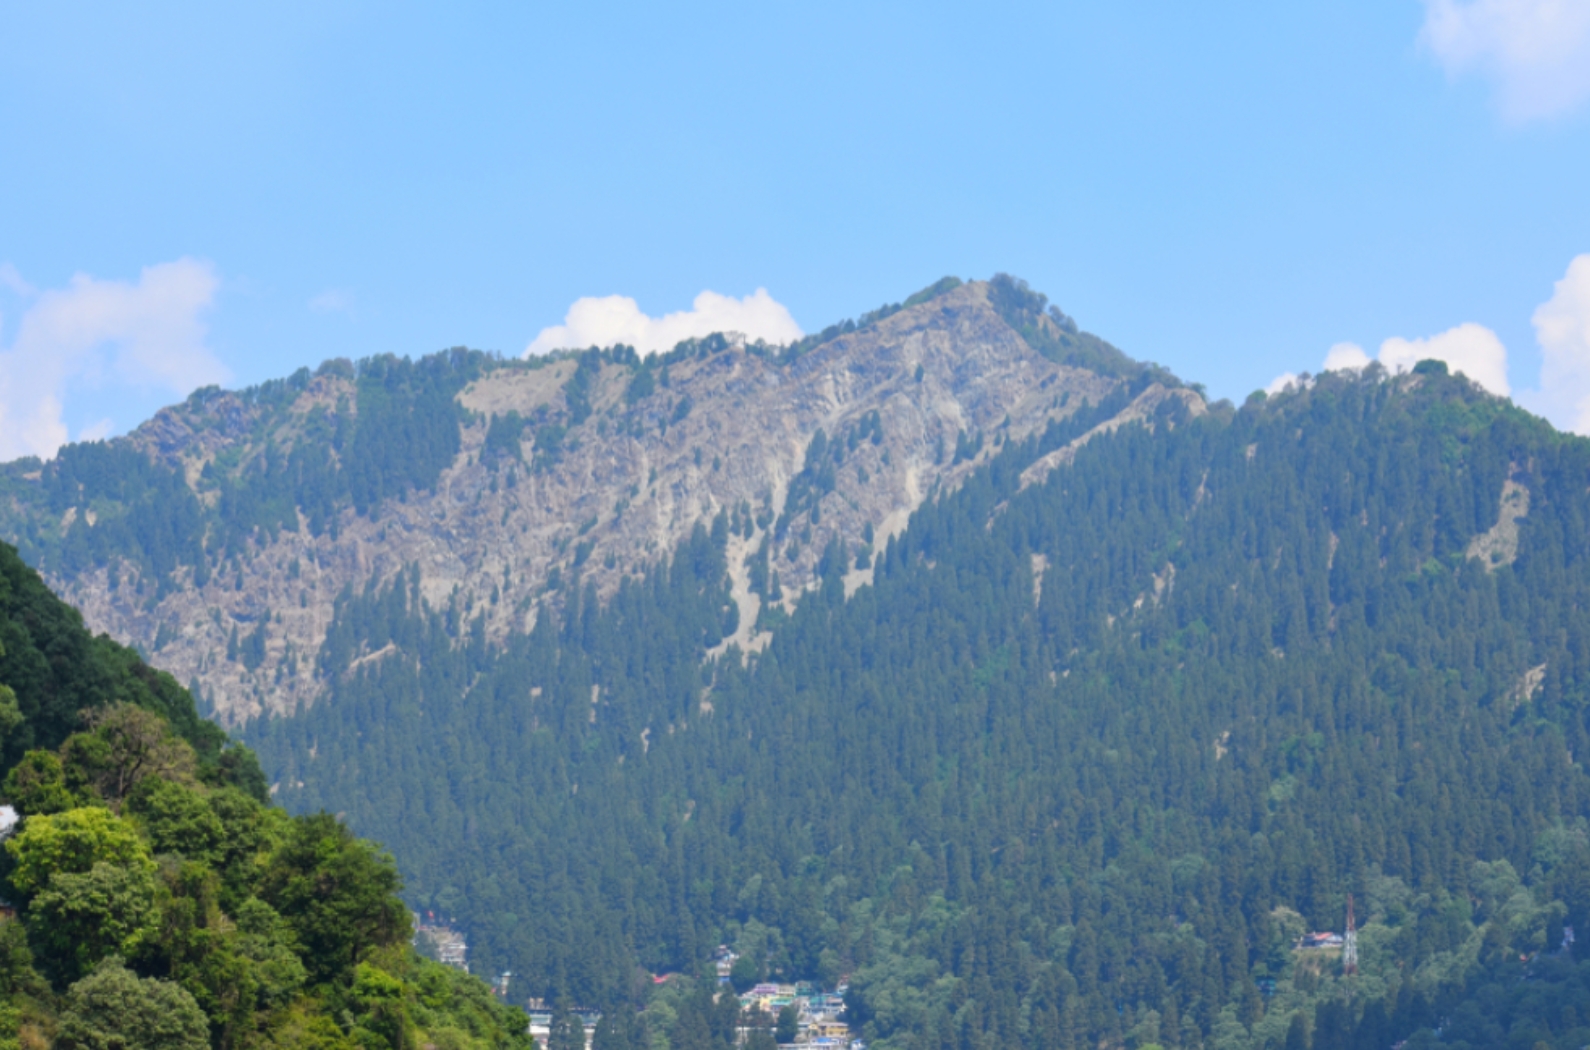 Naina peak or china peak in Nainital.